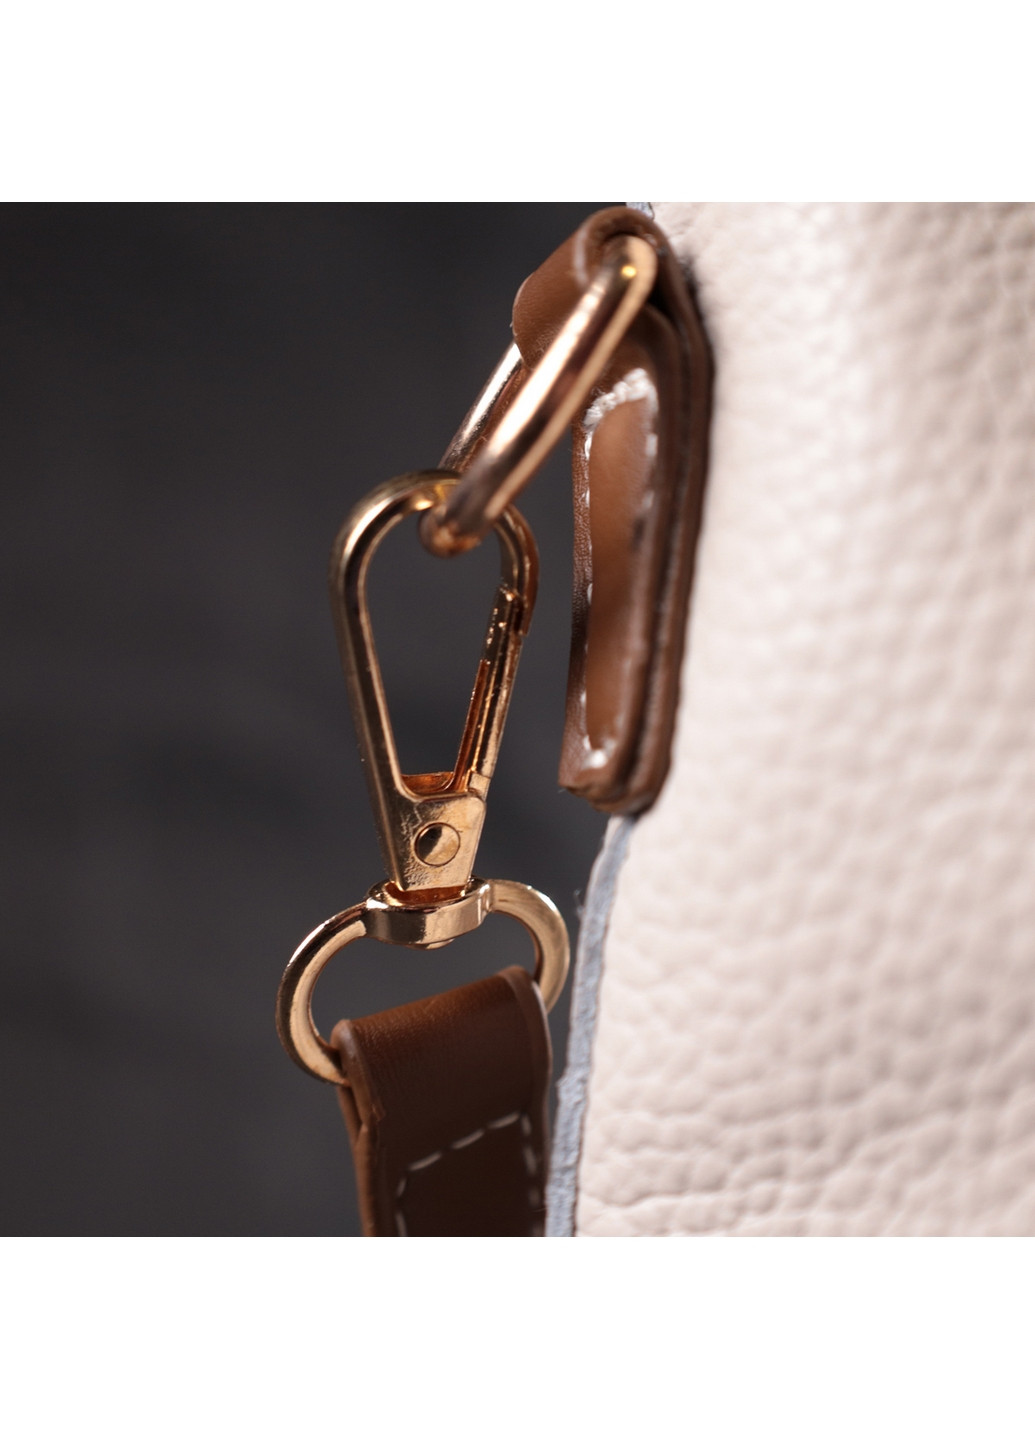 Женская кожаная сумка 21х18,5х8,5 см Vintage (276531374)